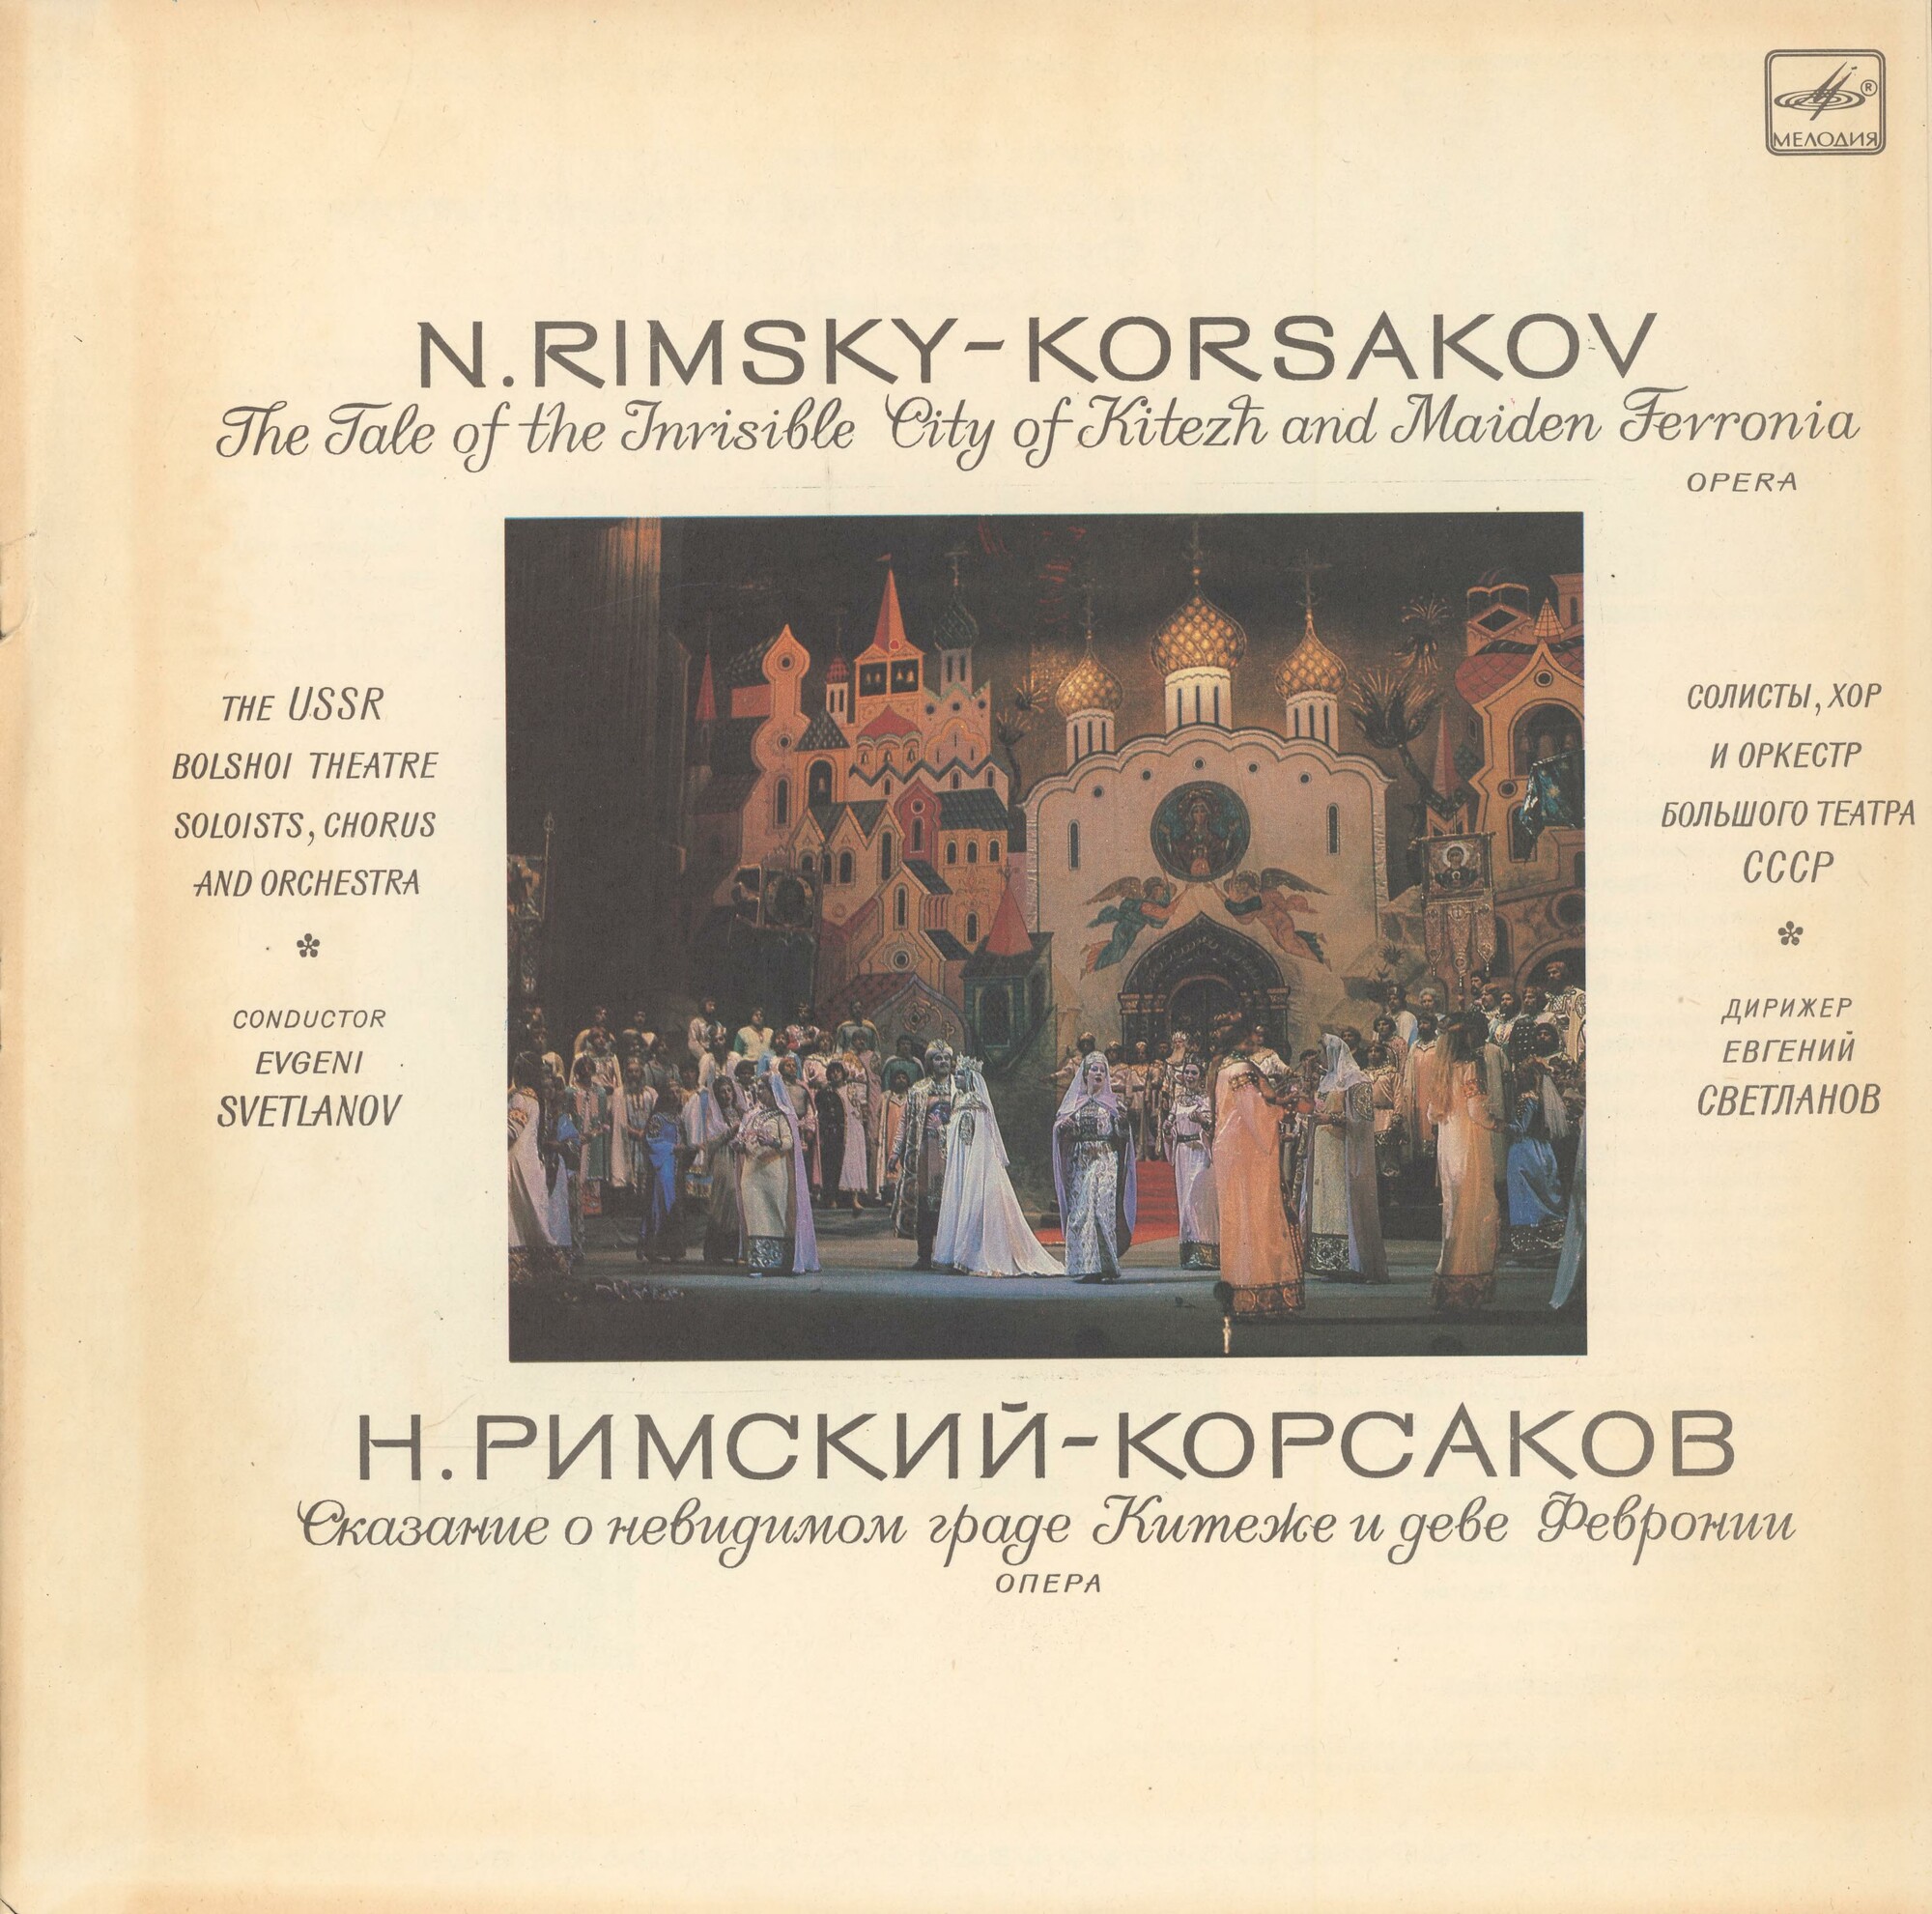 Н. РИМСКИЙ-КОРСАКОВ (1844-1908): «Сказание о невидимом граде Китеже и деве Февронии», опера в четырех действиях